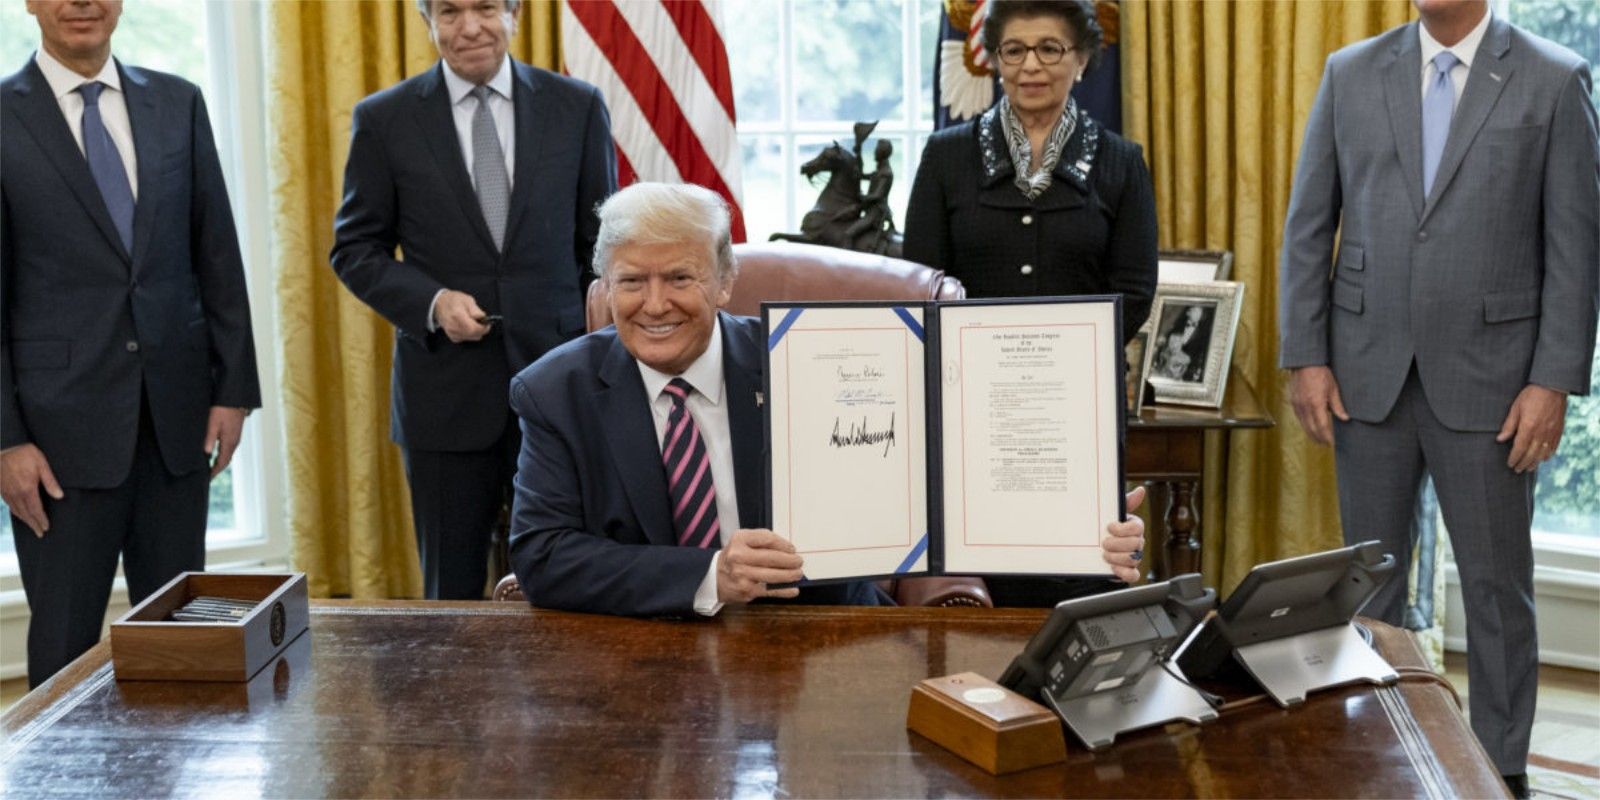 Trump with Signature